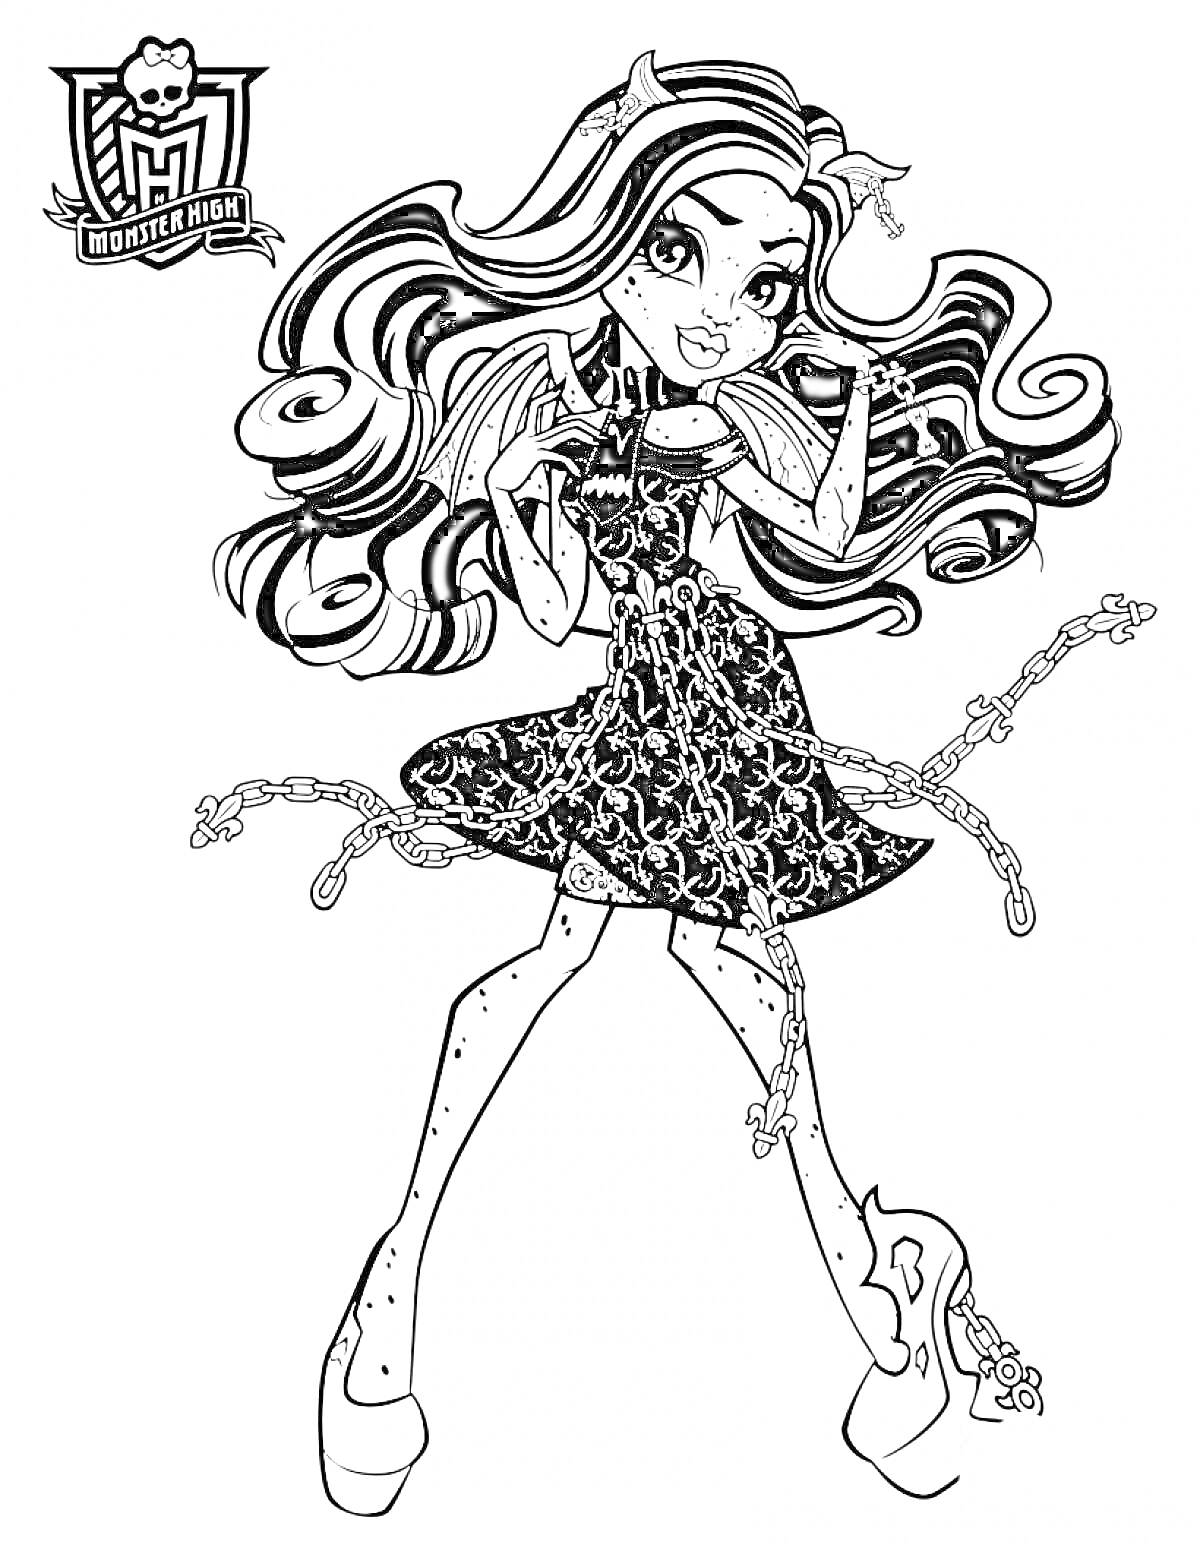 Девушка из Монстер Хай с длинными волнистыми волосами в платье и цепях, на высоких каблуках